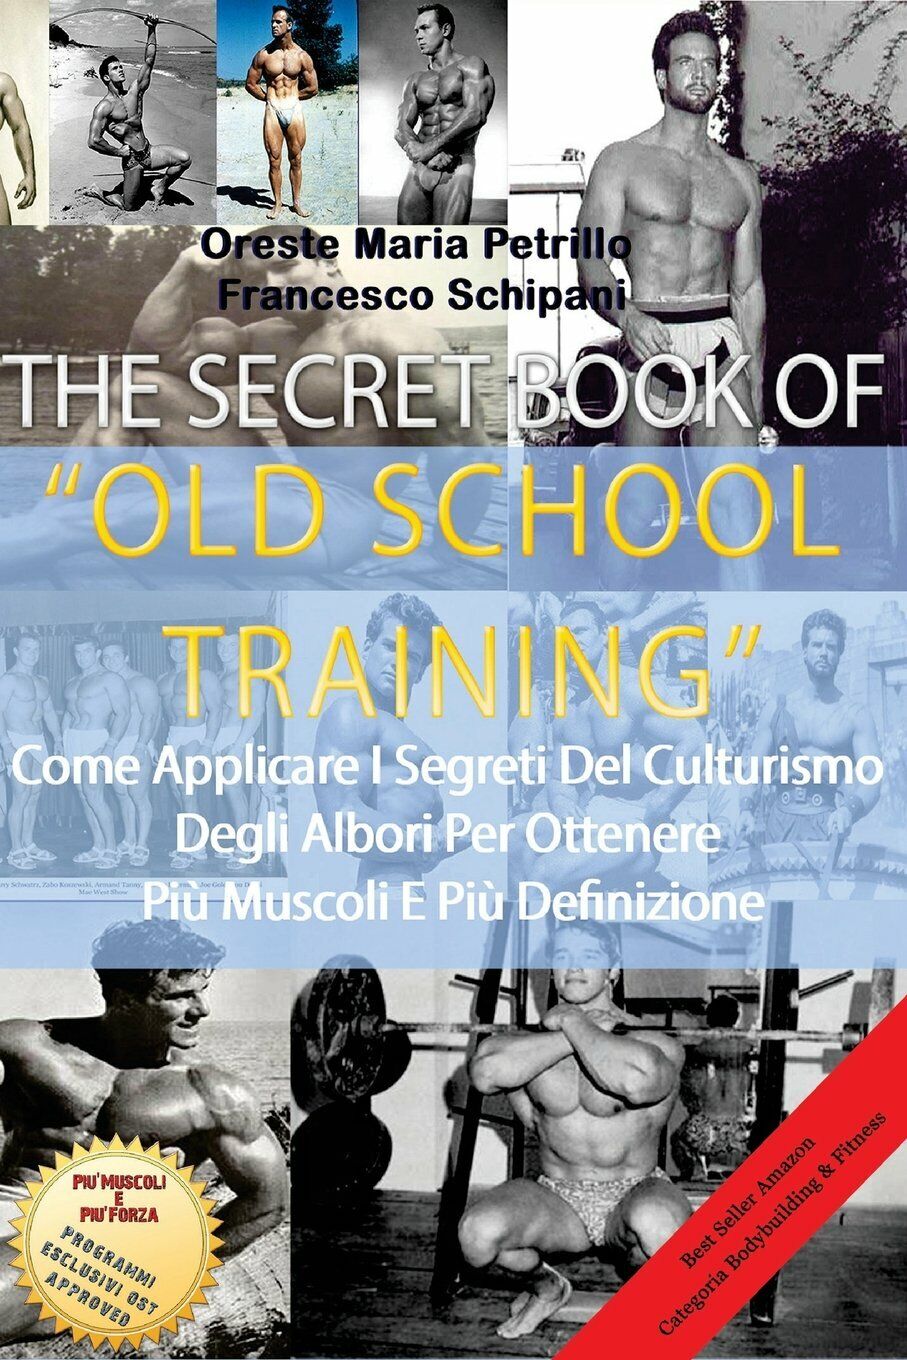 The Secret Book Of Old School Training - Petrillo,Schipani - Lulu.com, 2014